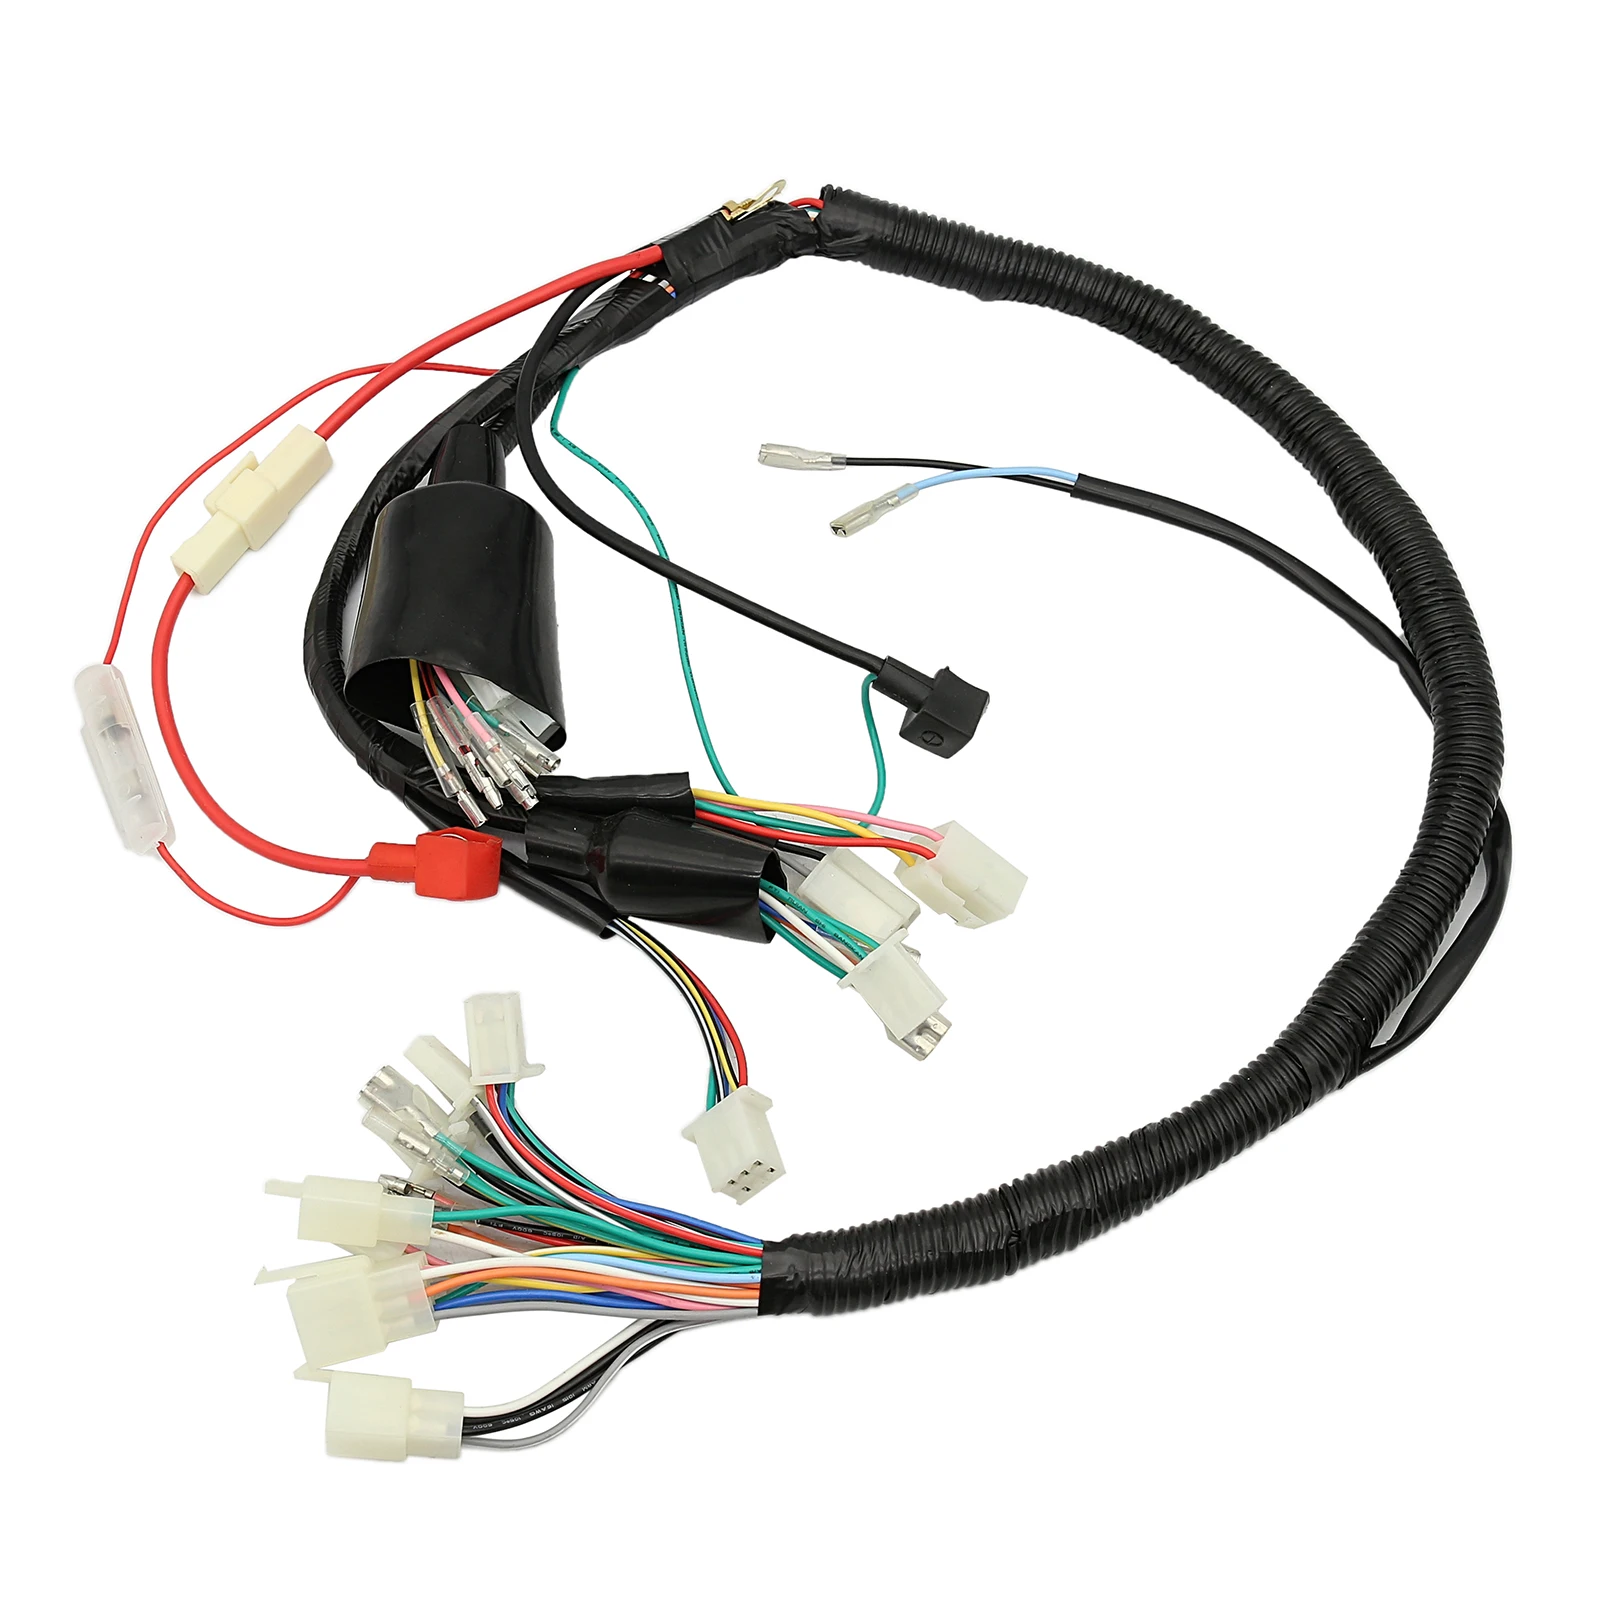 

Electric Wiring Harness Kit Stator Wire for Honda Z50 Z50A Z50J Z50R Mini Trail Monkey Bike Ignition Accessories